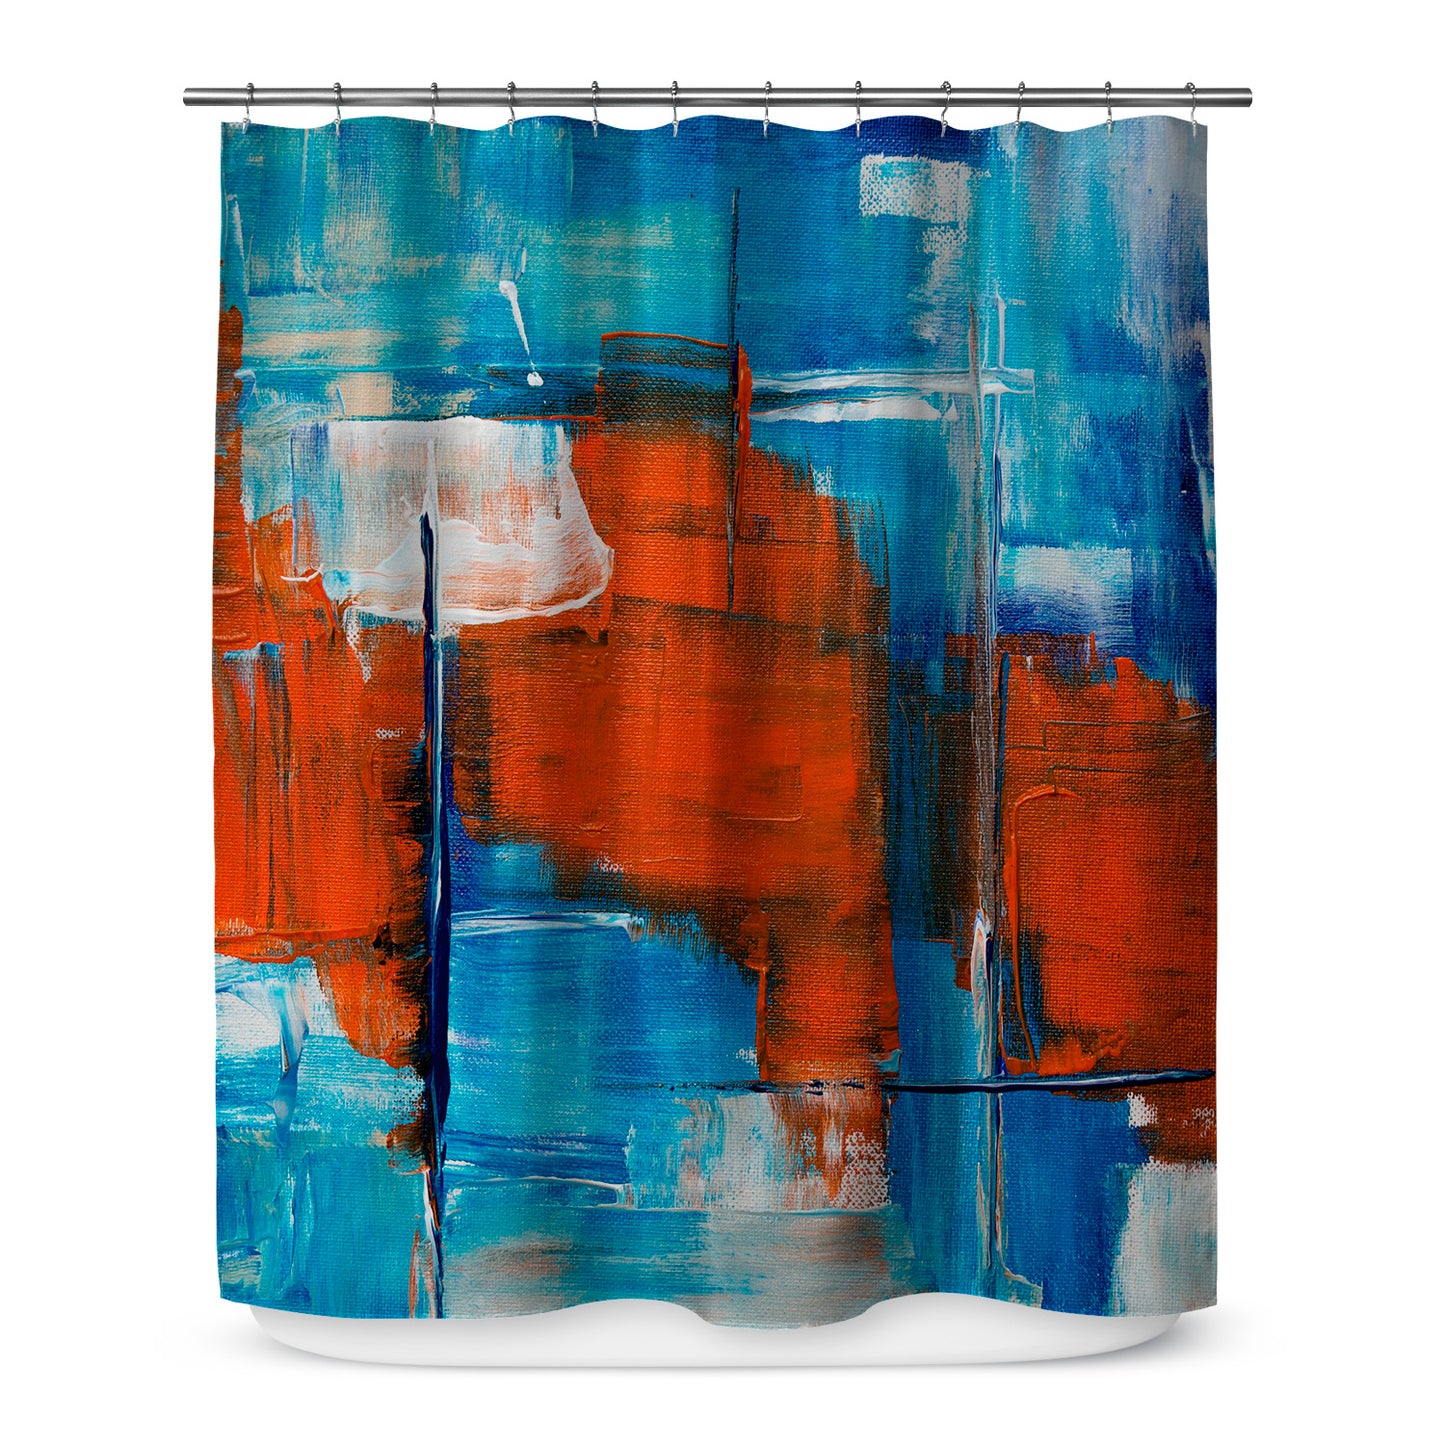 Azulado Shower Curtain